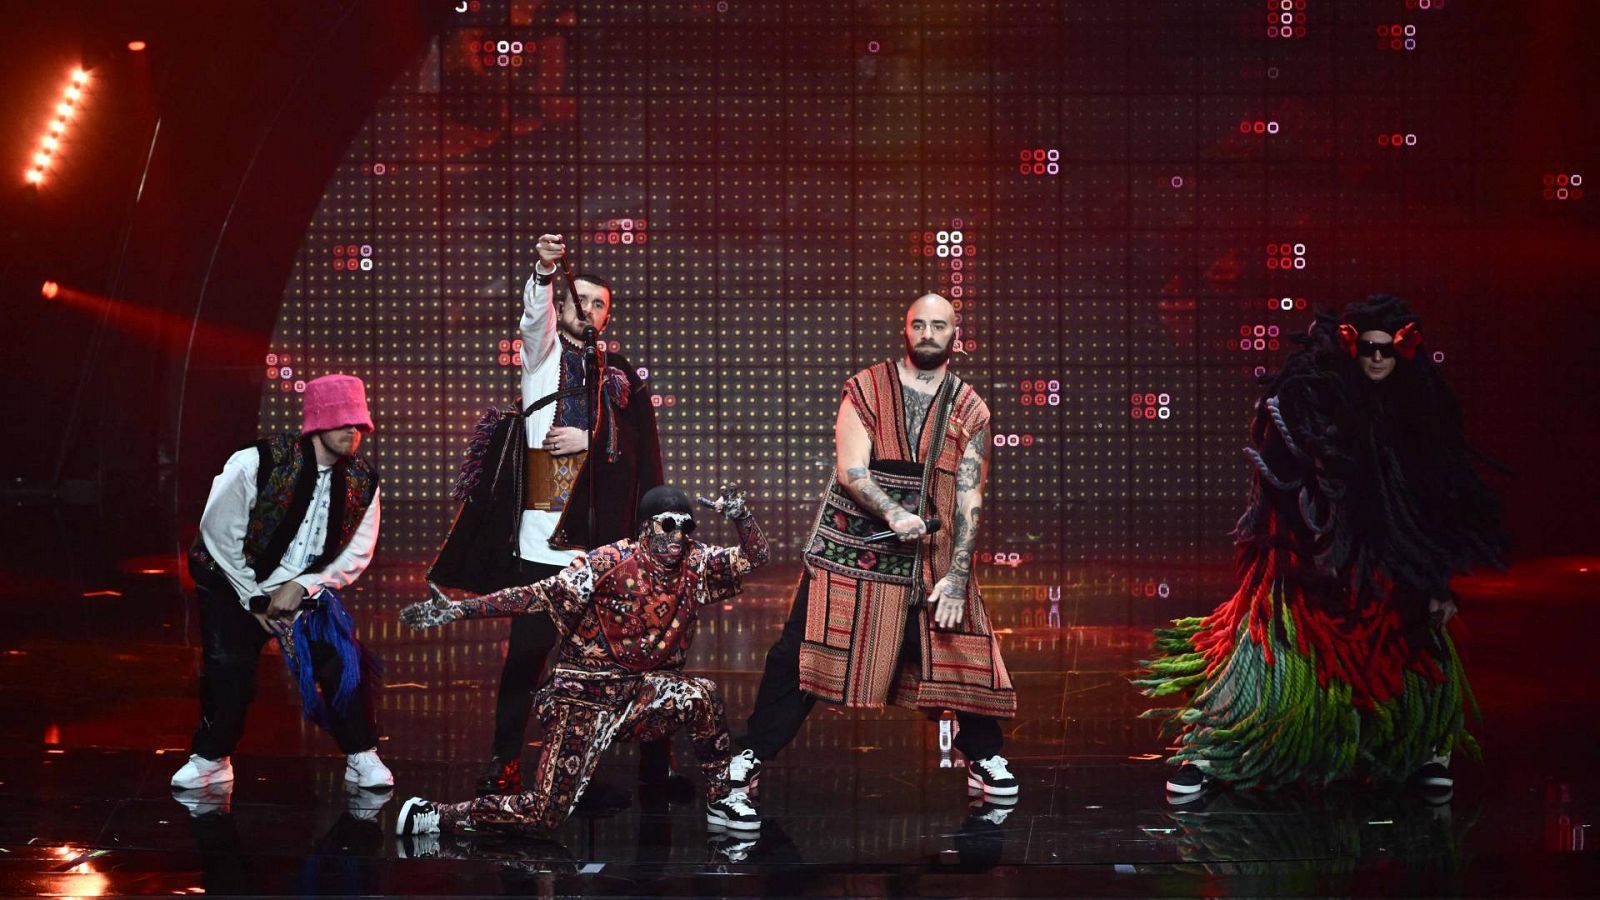 Eurovisión 2022 - Ucrania: Kalush Orchestra canta "Stefania" en la semifinal 1